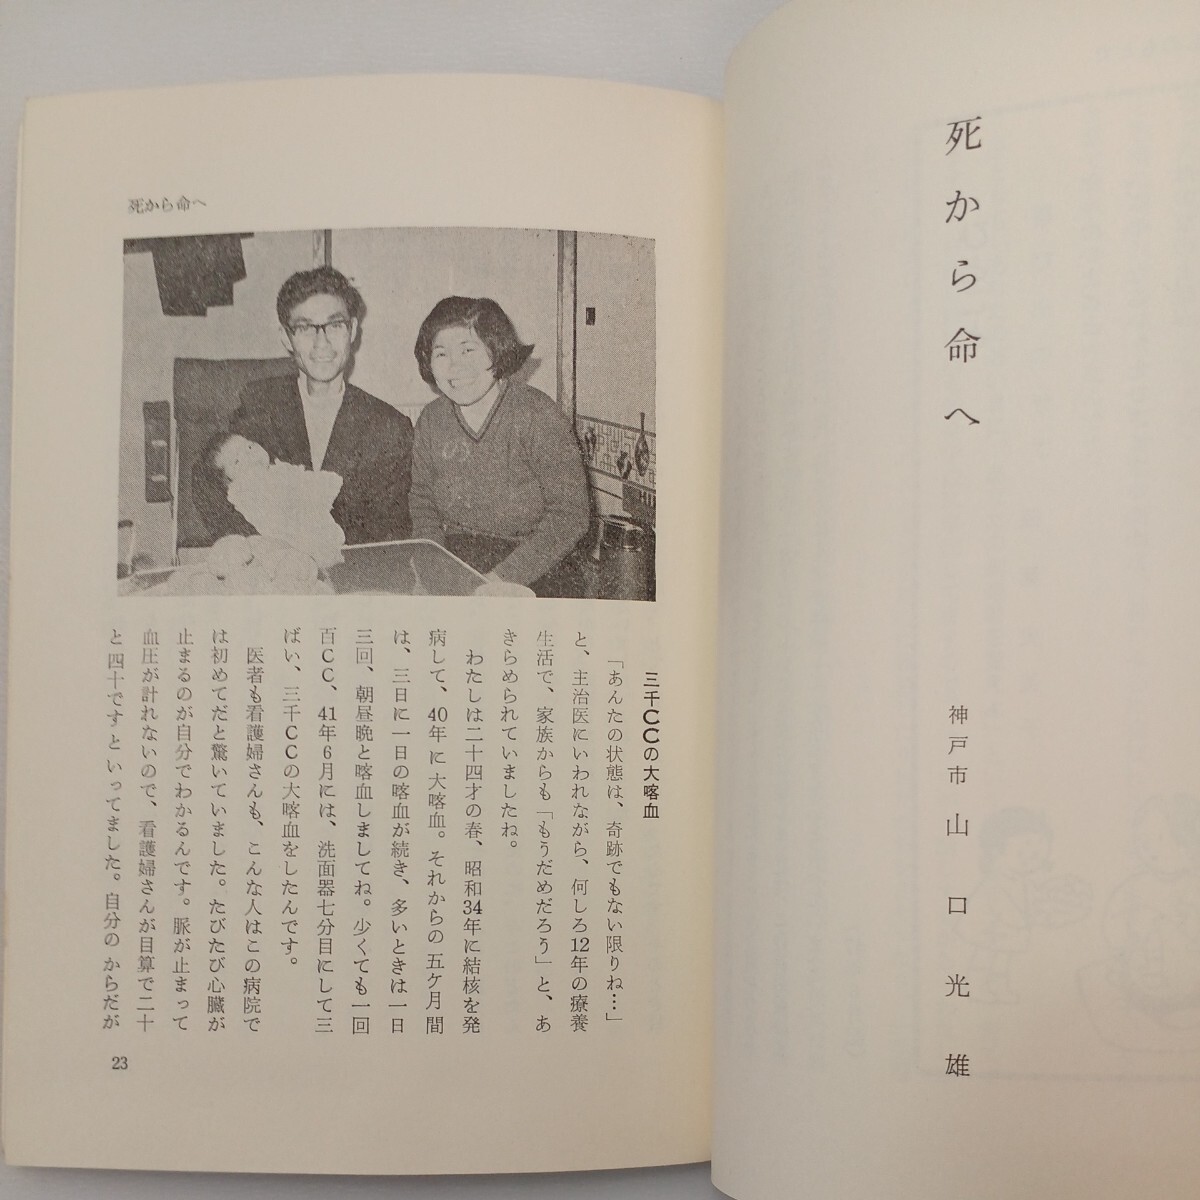 zaa-572♪生きるとは (よろこびの泉シリーズ 第4集) 単行本 林 トヨ (編集) 日本ミッション (1978/12/1)